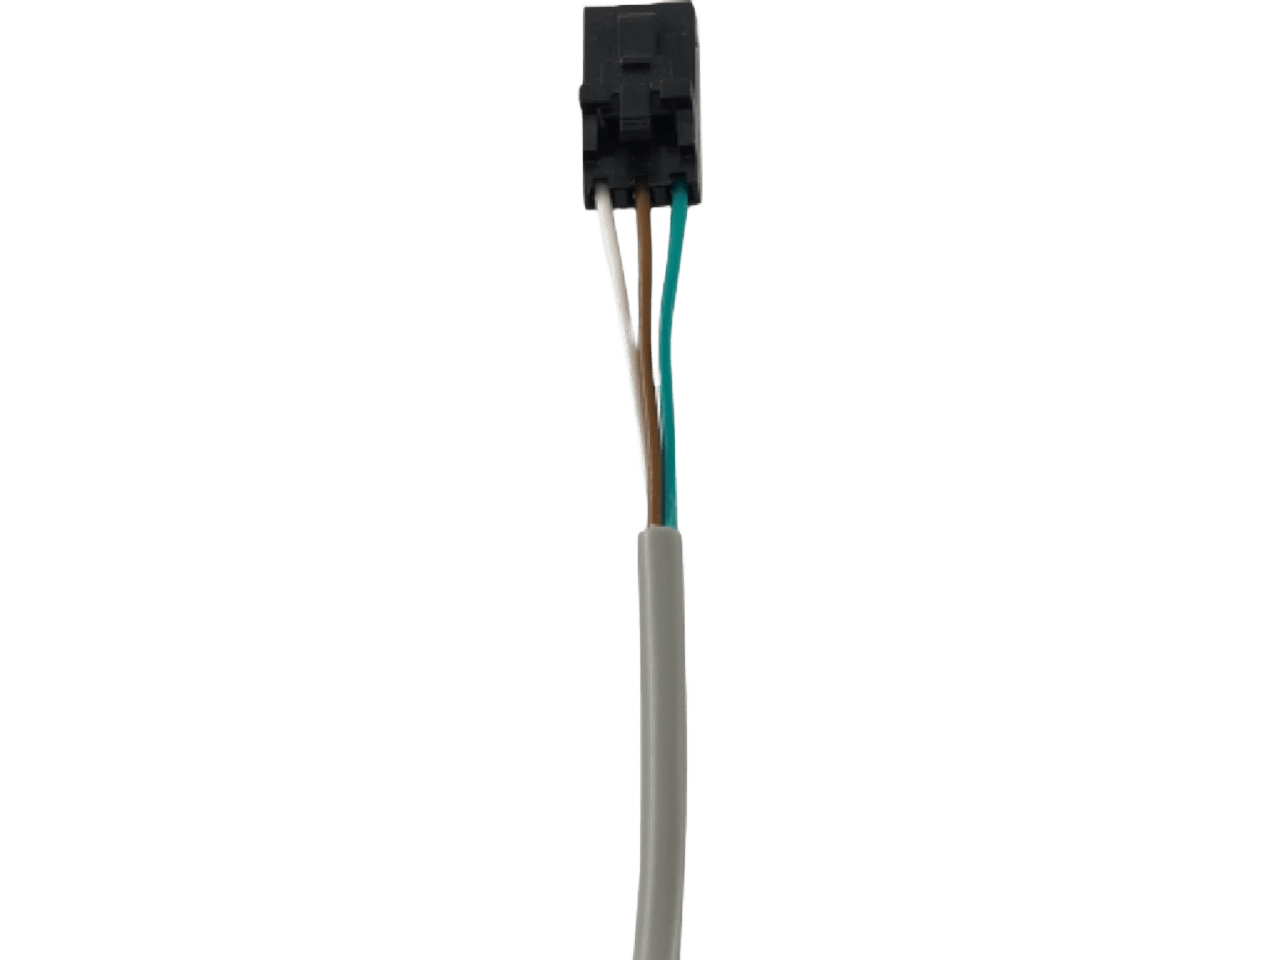 FRABA VITECTOR OSE-S 6601 Sensoren optische Schaltleiste Sender Tx 6,5m/Empfänger Rx 0,5m PVC-Kabel GfA-Stecker